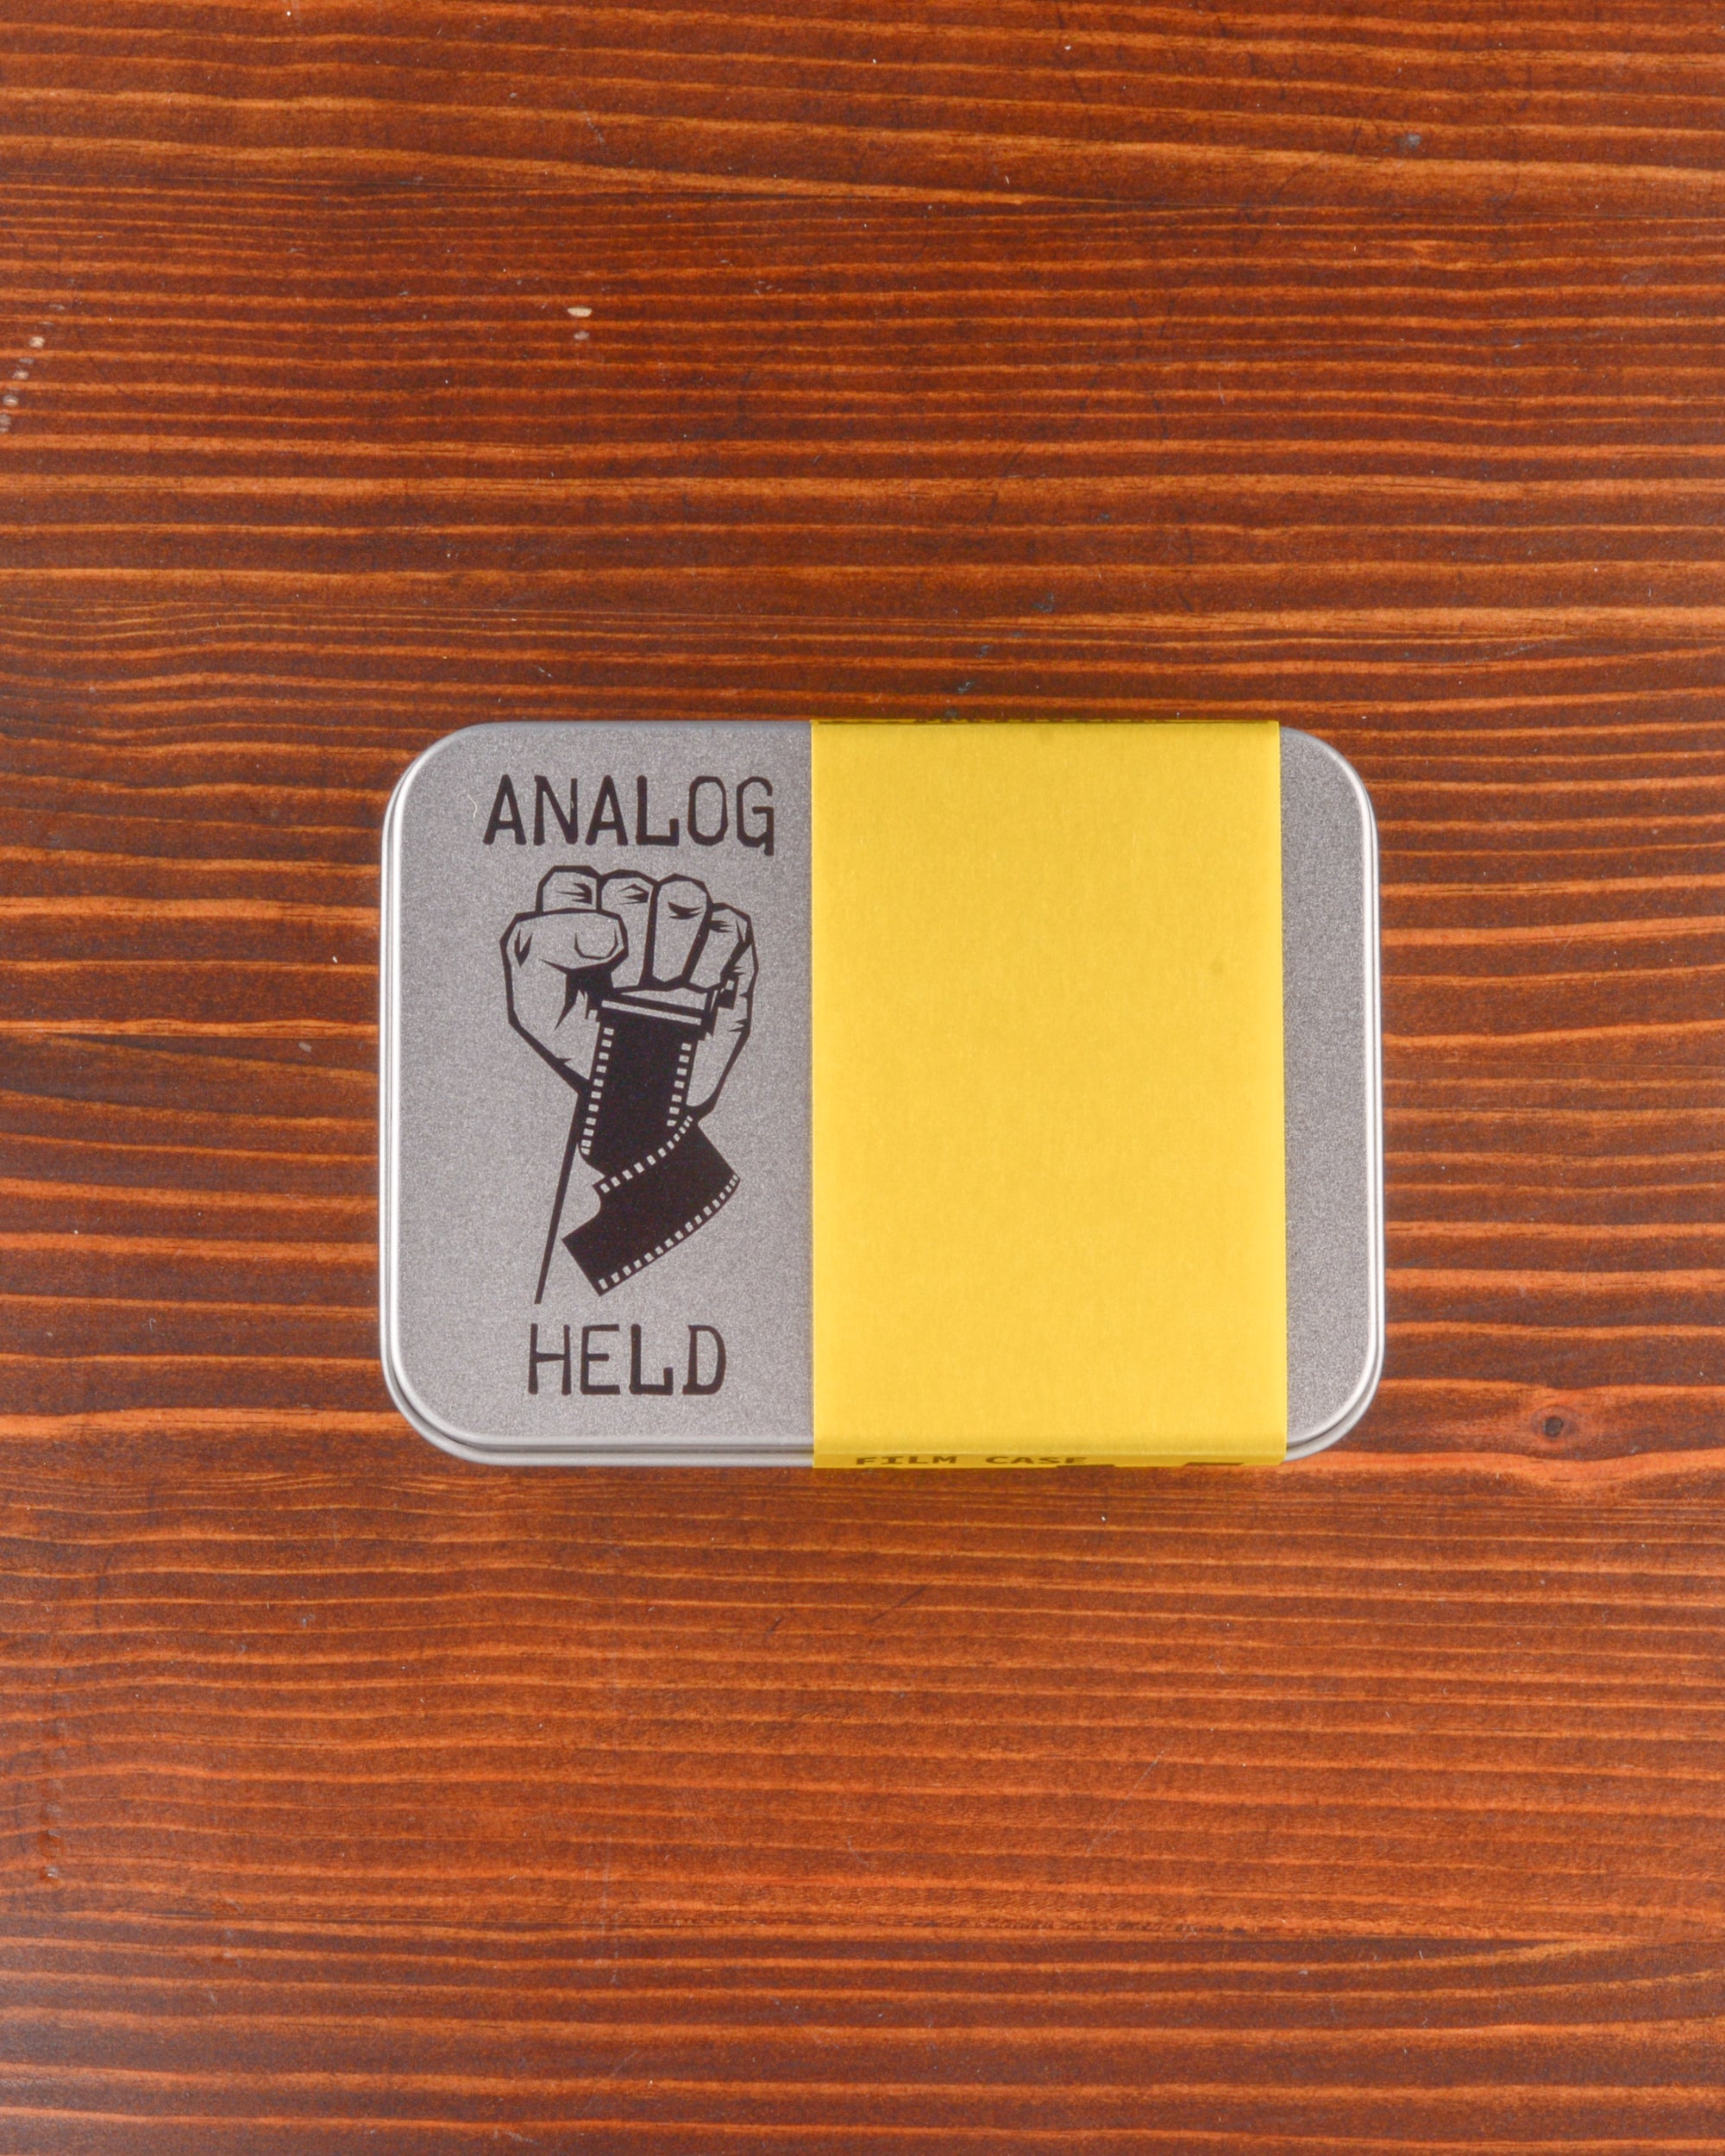 AnalogHeld Pellicule 35mm Case